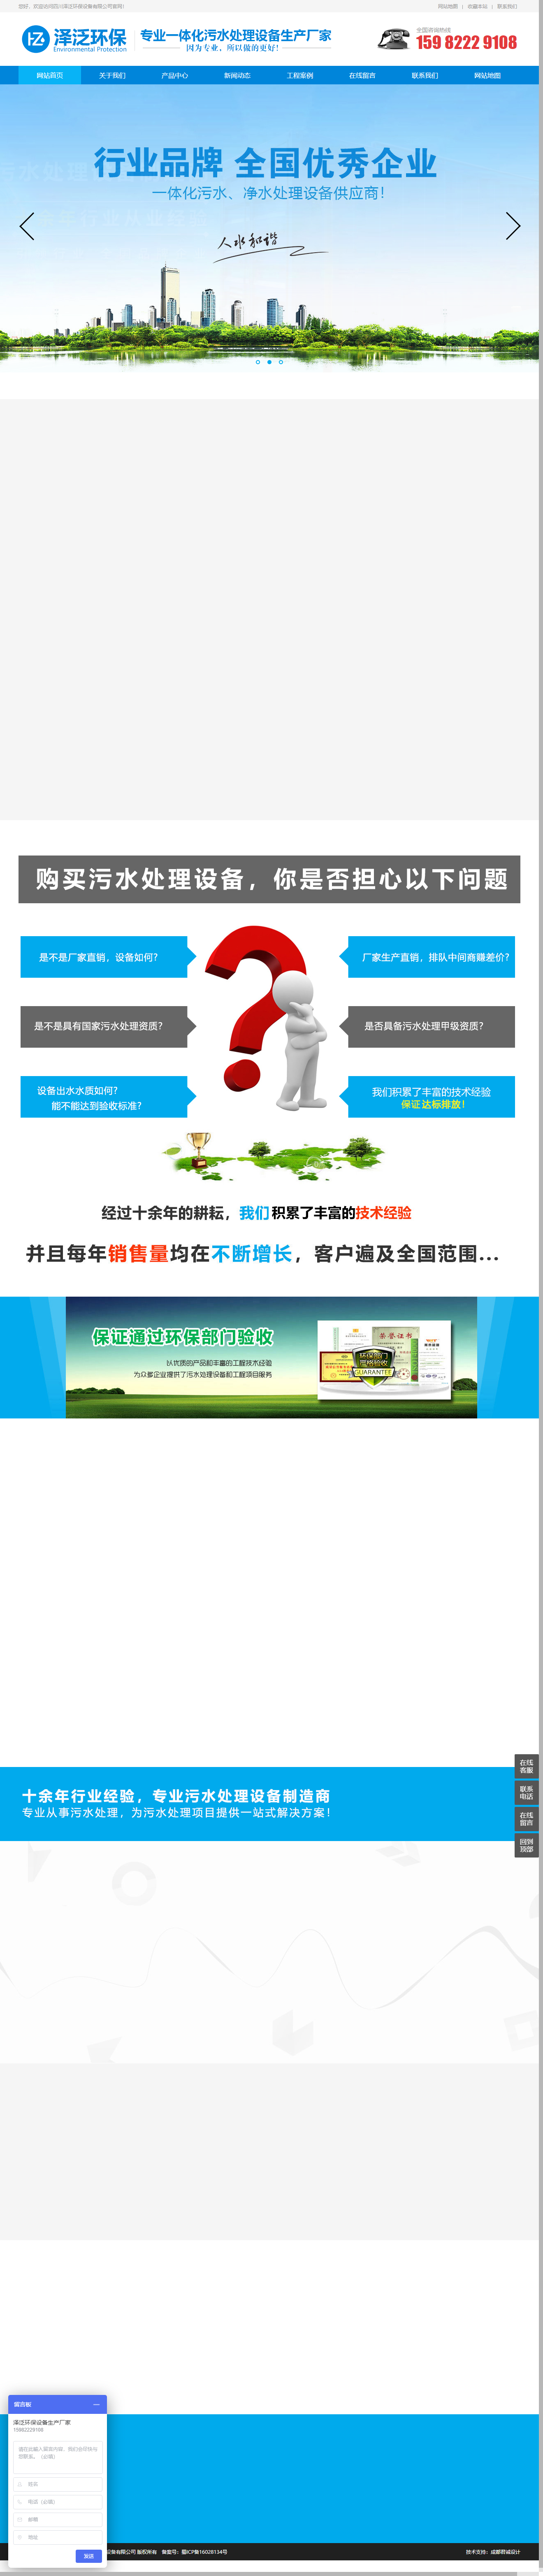 四川泽泛环保设备有限公司网站案例